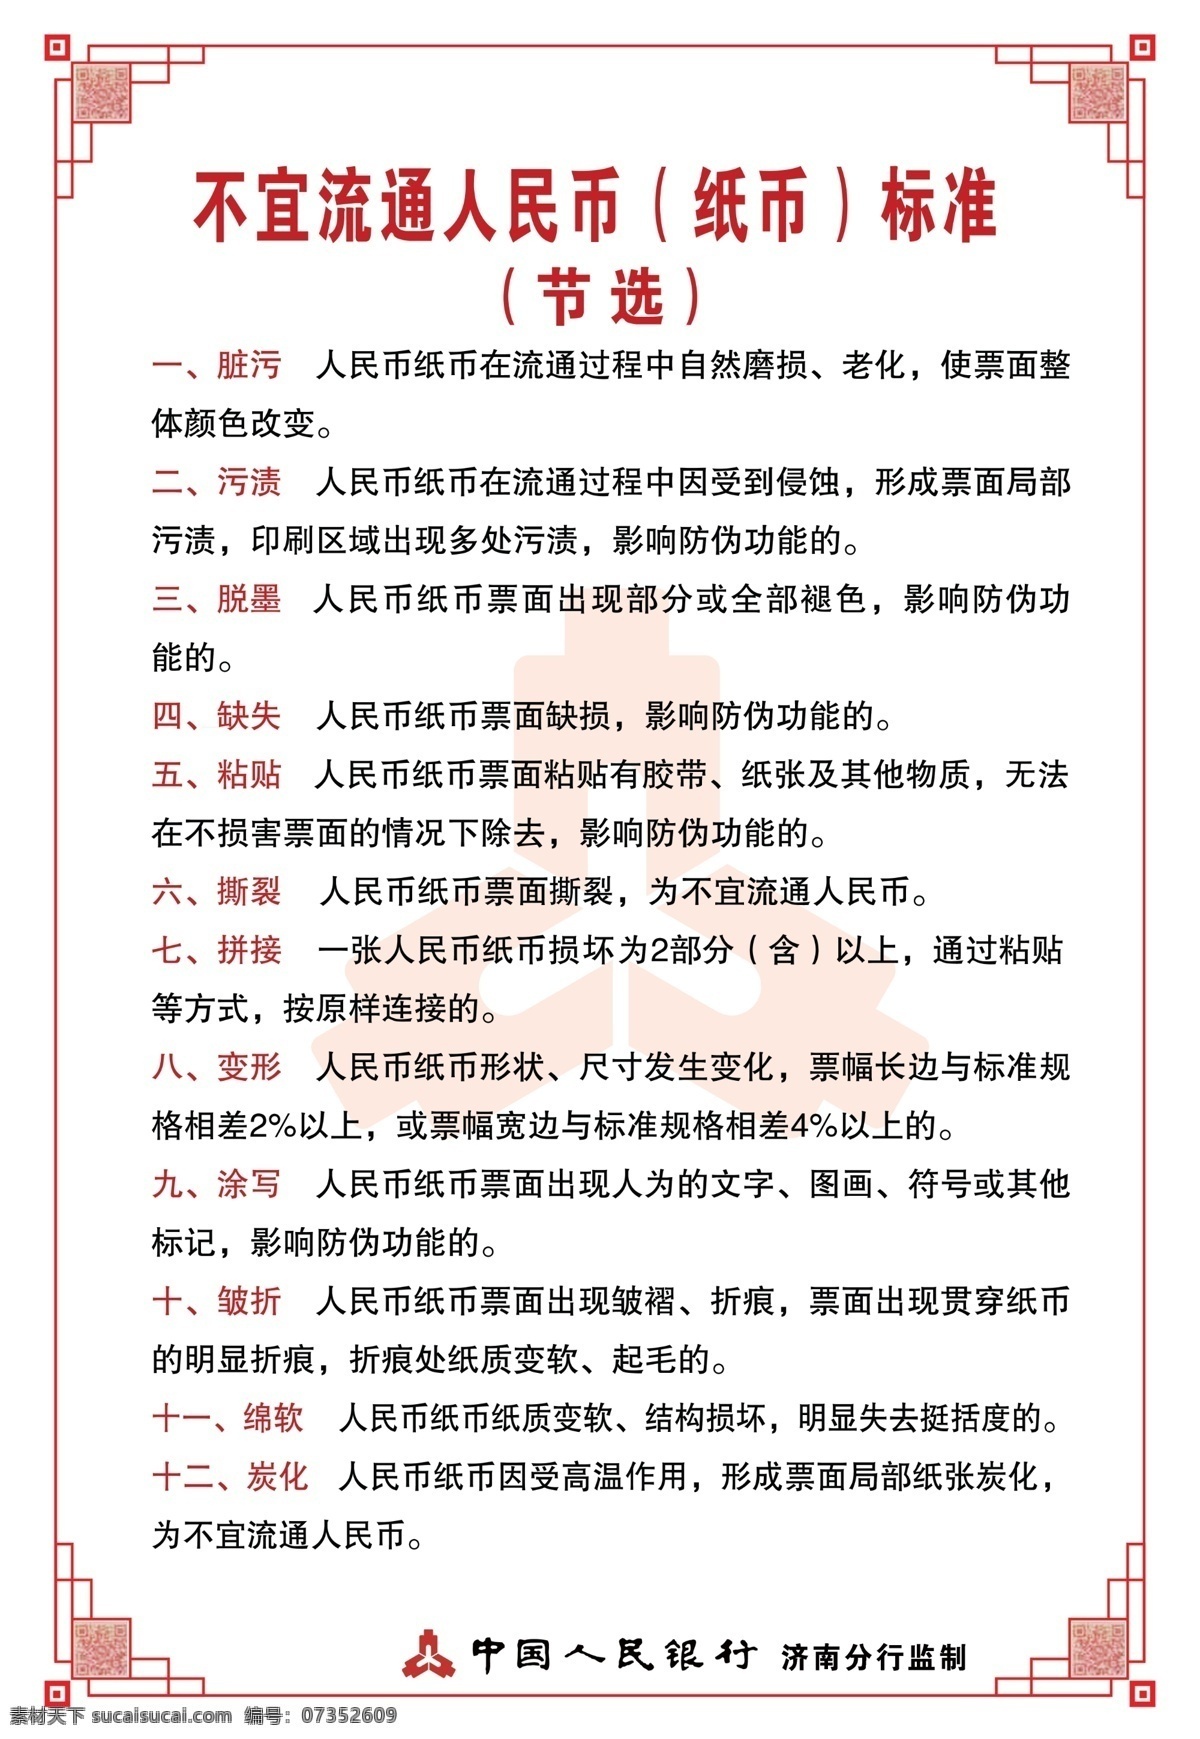 中国人民银行 人民币 背景 宣传栏 纸币标准